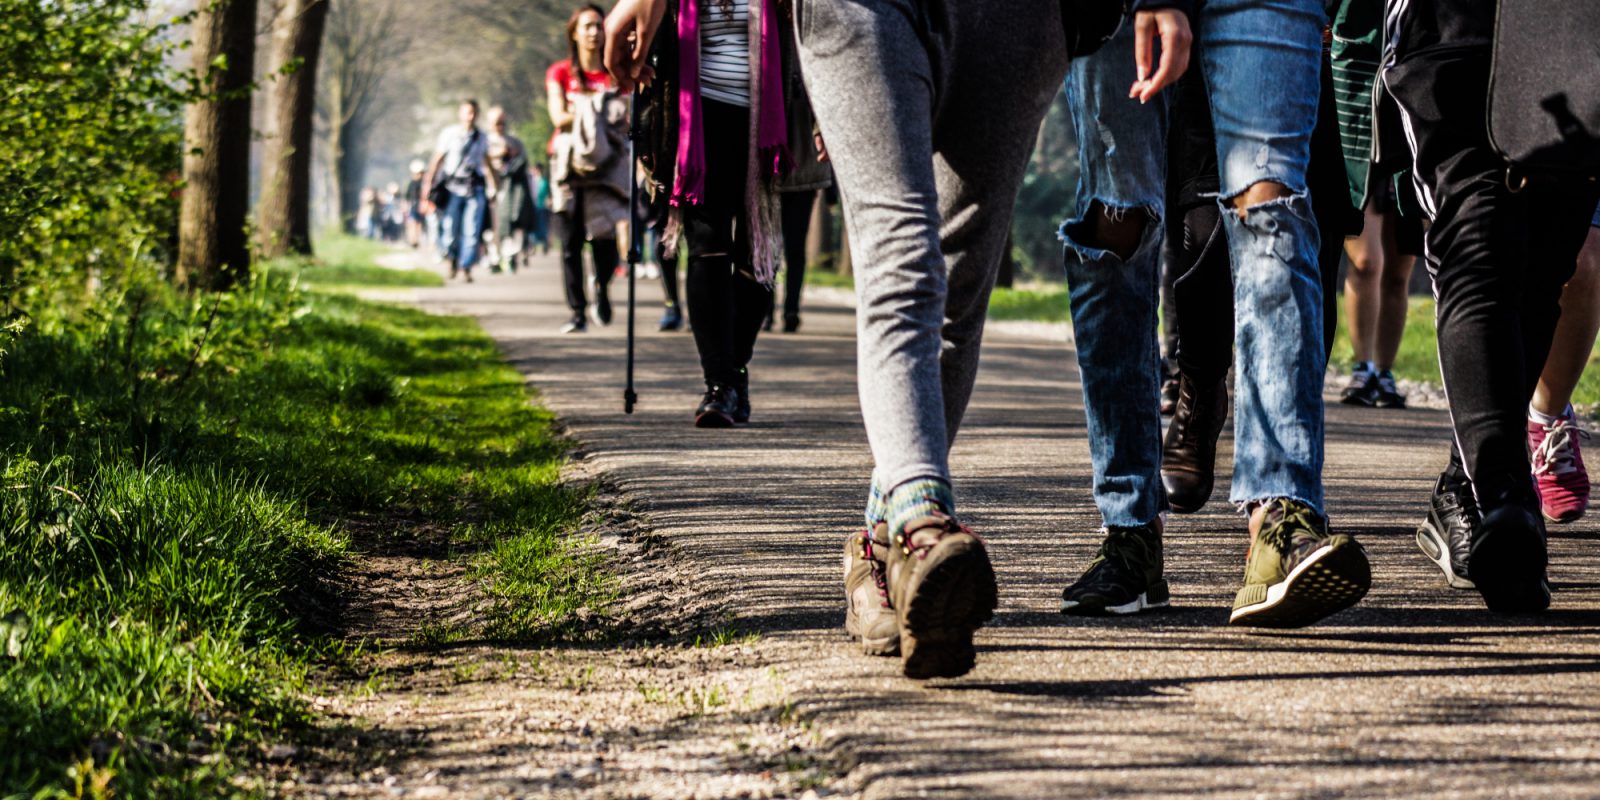 Participantes de la caminata anual recorren hacen juntos el camino (Caminata de Frans)